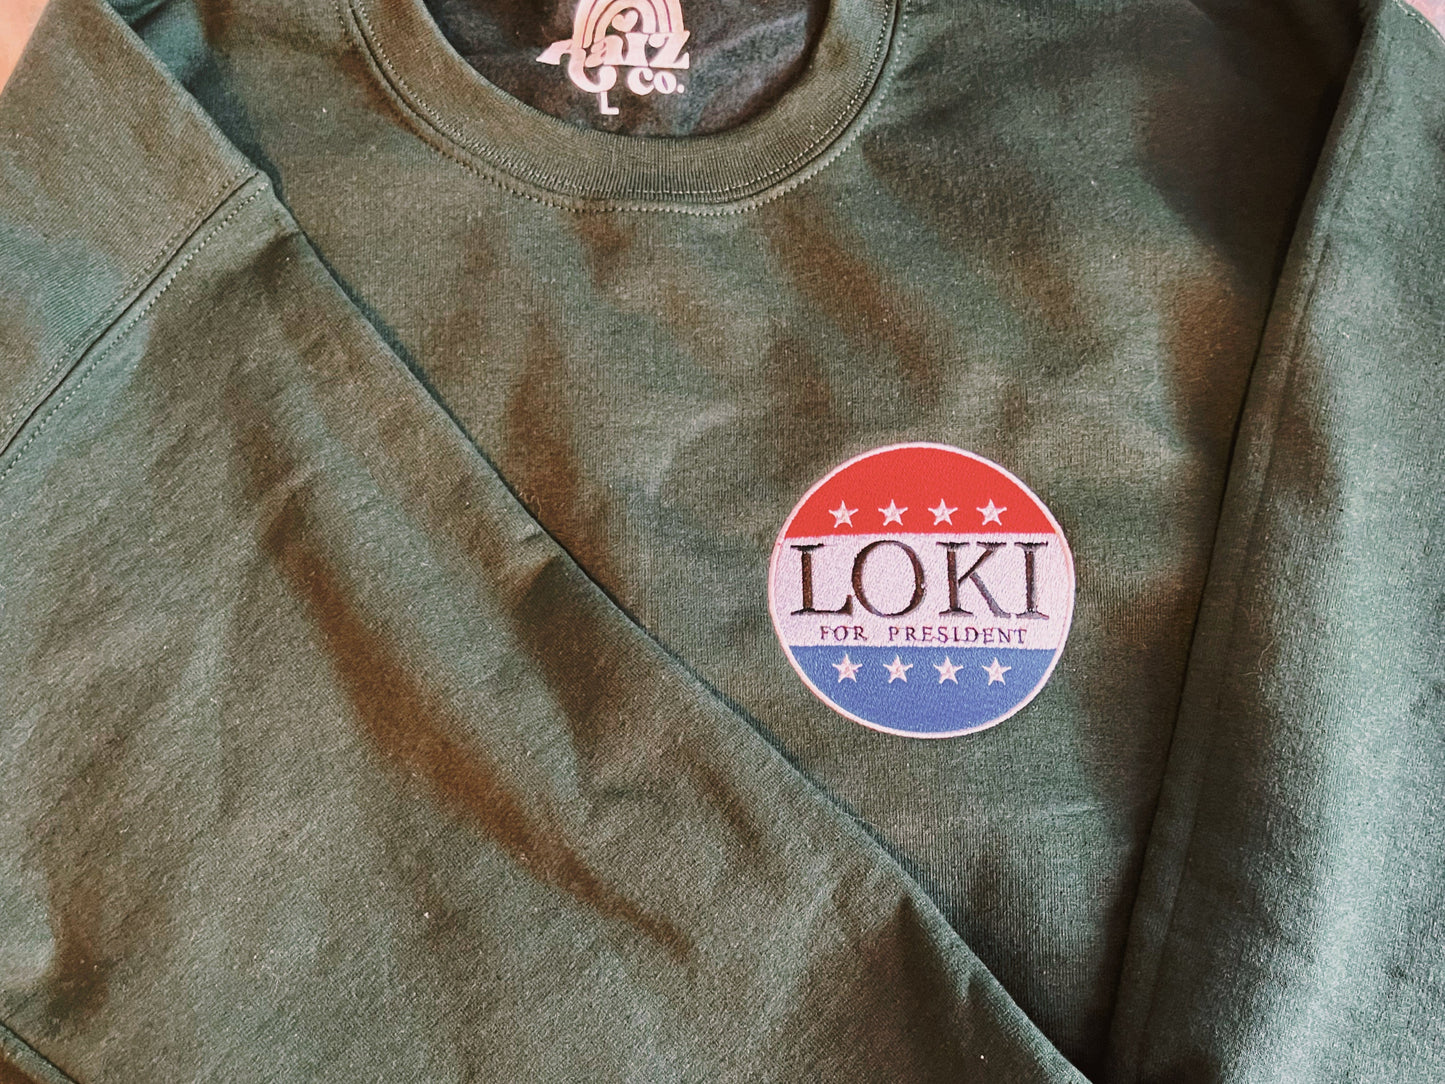 Loki 4 Pres Embroidered Sweatshirt